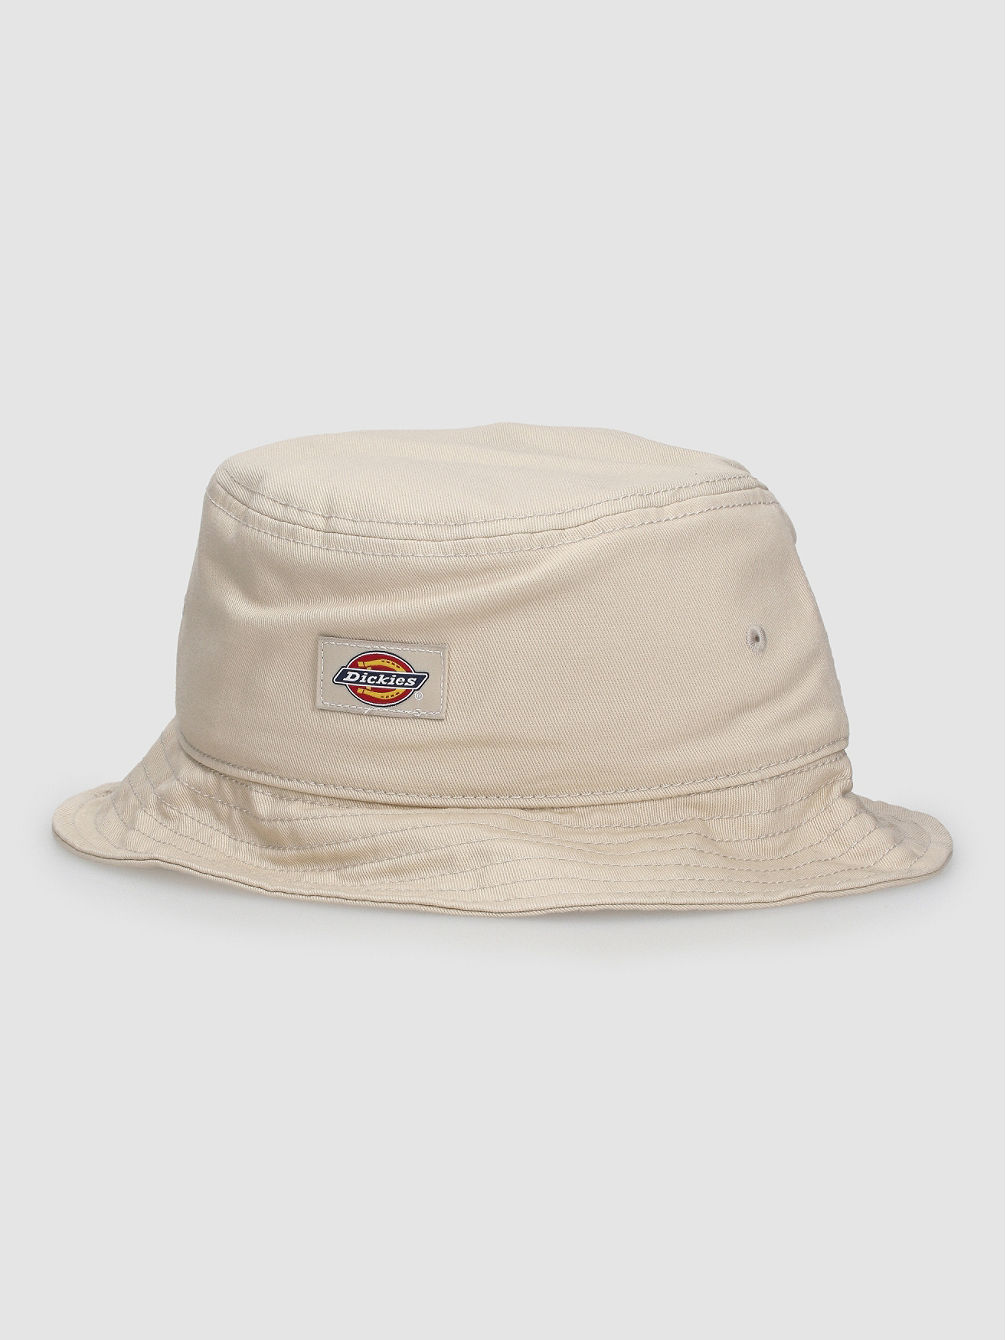 Clarks Grove Bucket Hat